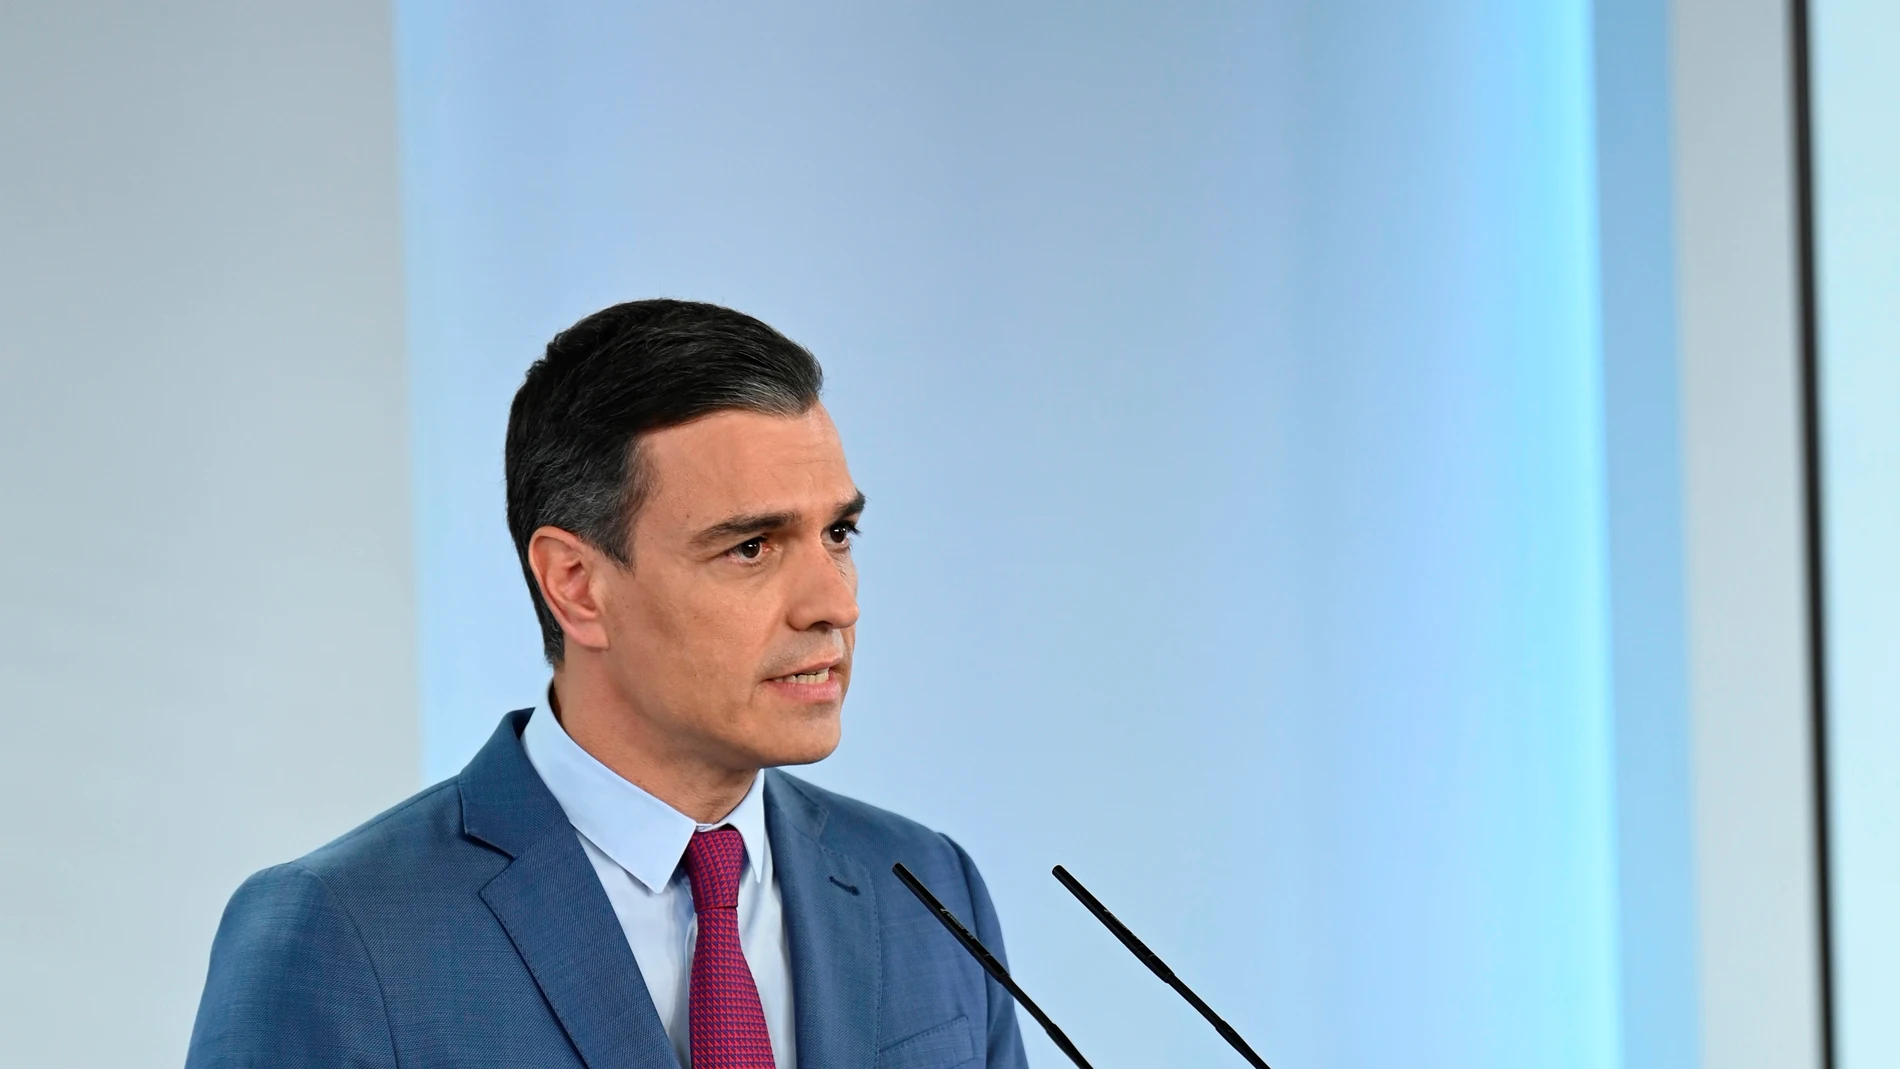 El presidente del Gobierno, Pedro Sánchez durante su comparecencia en la que ha dado a conocer la nueva composición del Gobierno